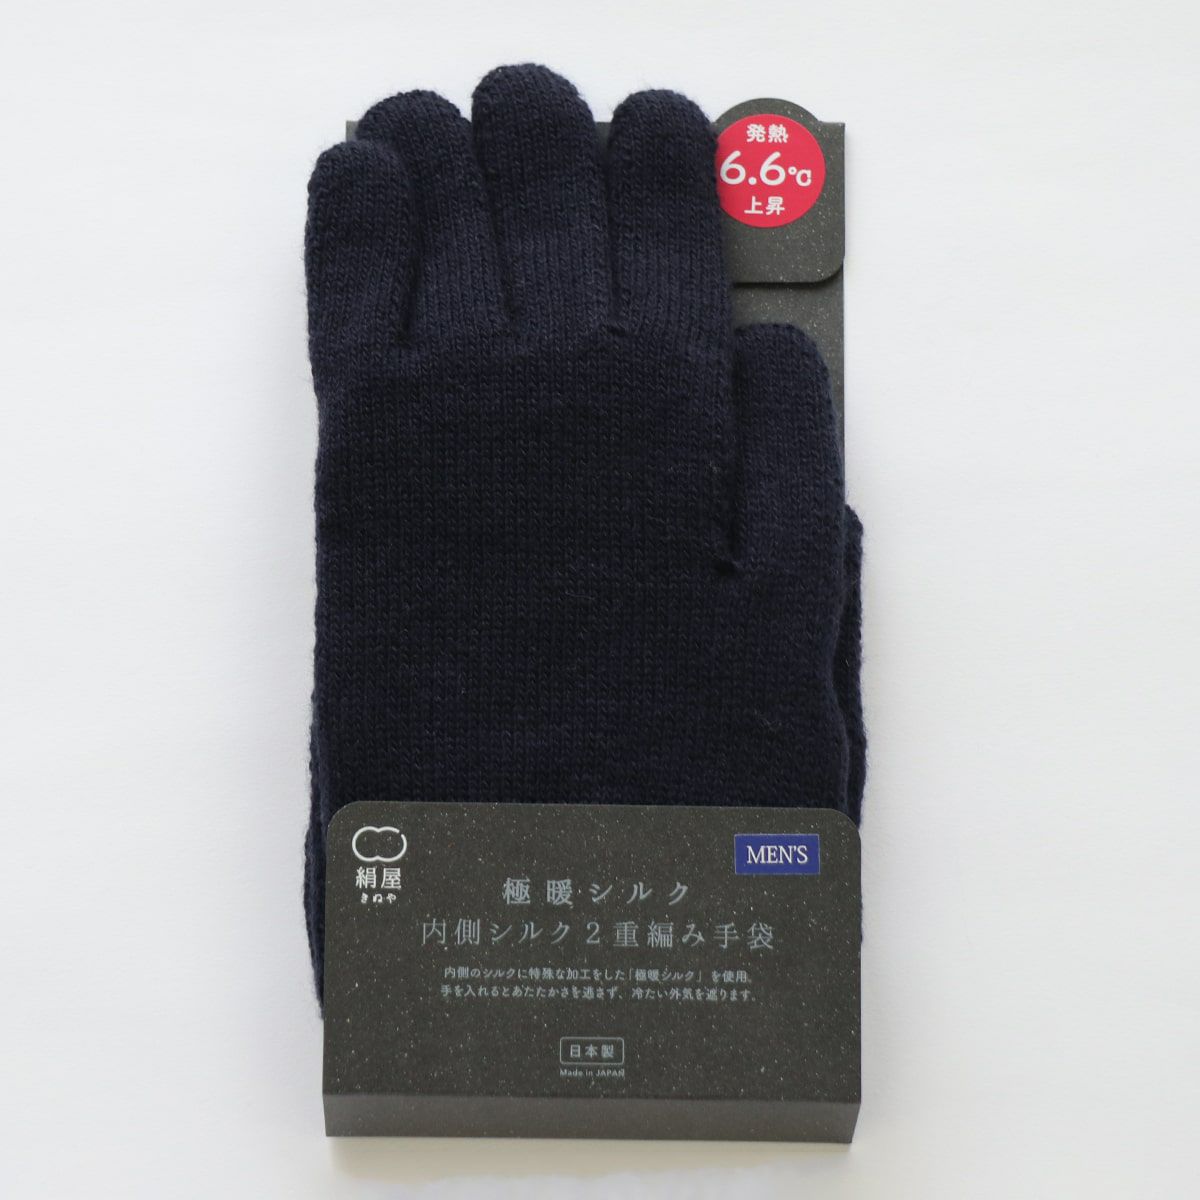 絹屋 極暖シルク 手袋 メンズ 紺色 - 手袋